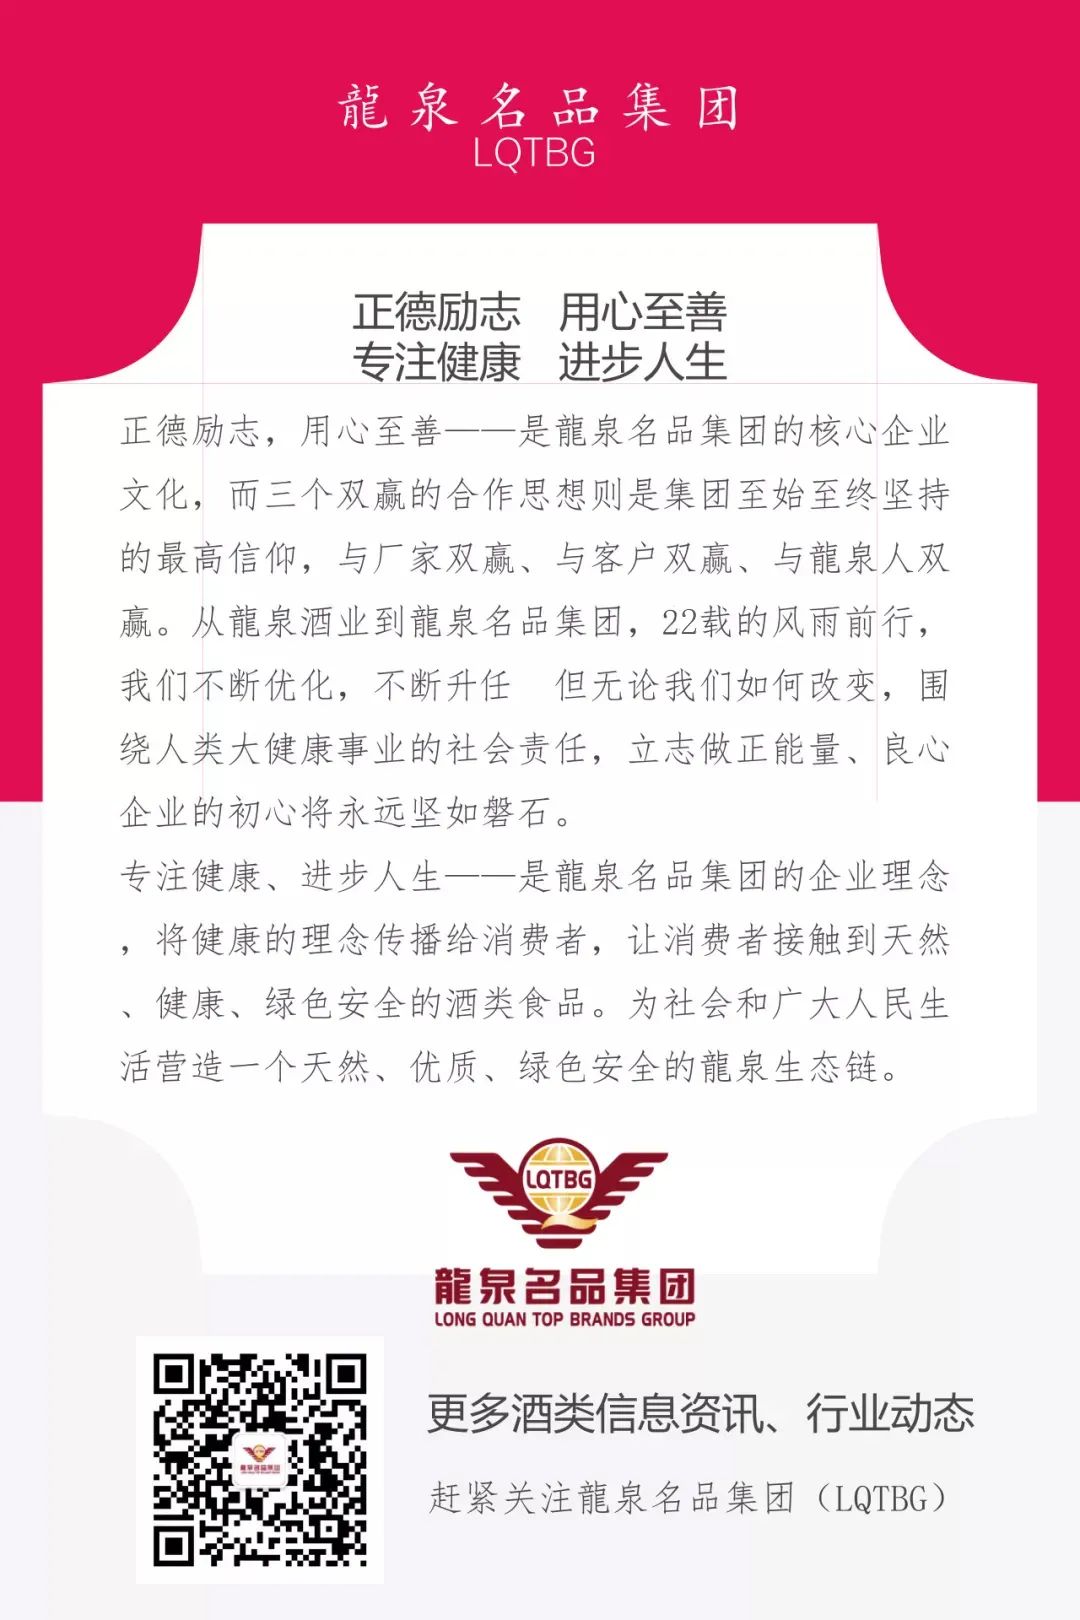 热烈欢迎劲牌公司董事长、总裁吴少勋一行莅临龍泉名品集团指导工作